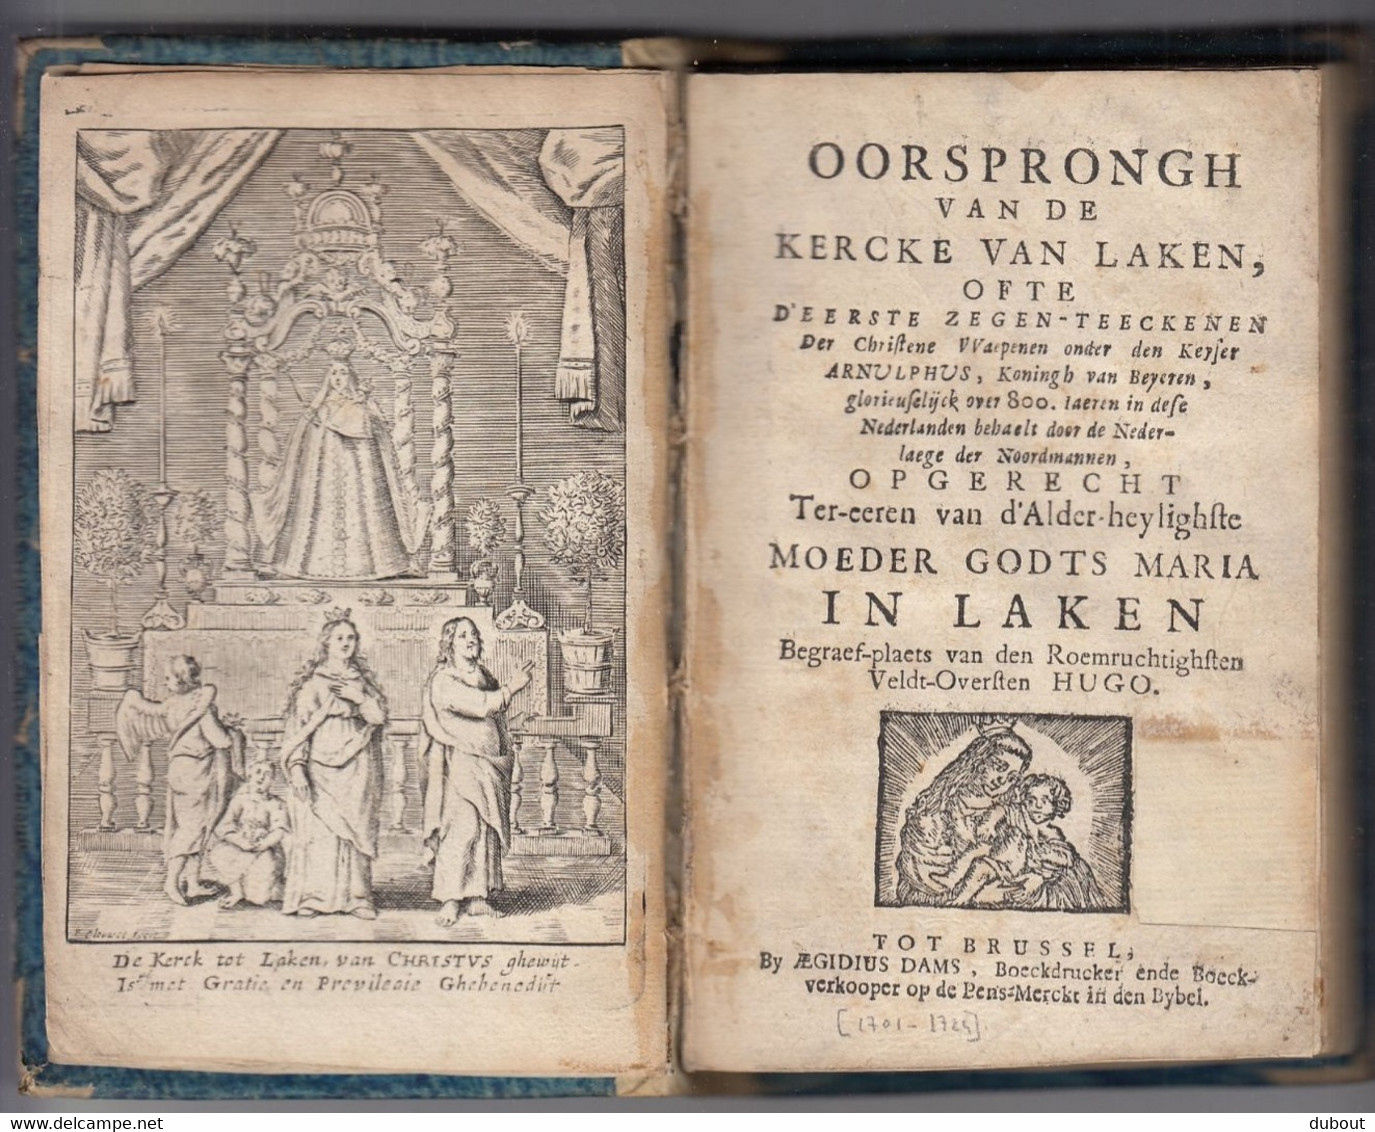 LAKEN - Oorsprongh Van De Kercke Van Laken - Quentin Hennin - Brussel, Egidius Dams, 1694?  (W133) - Antique